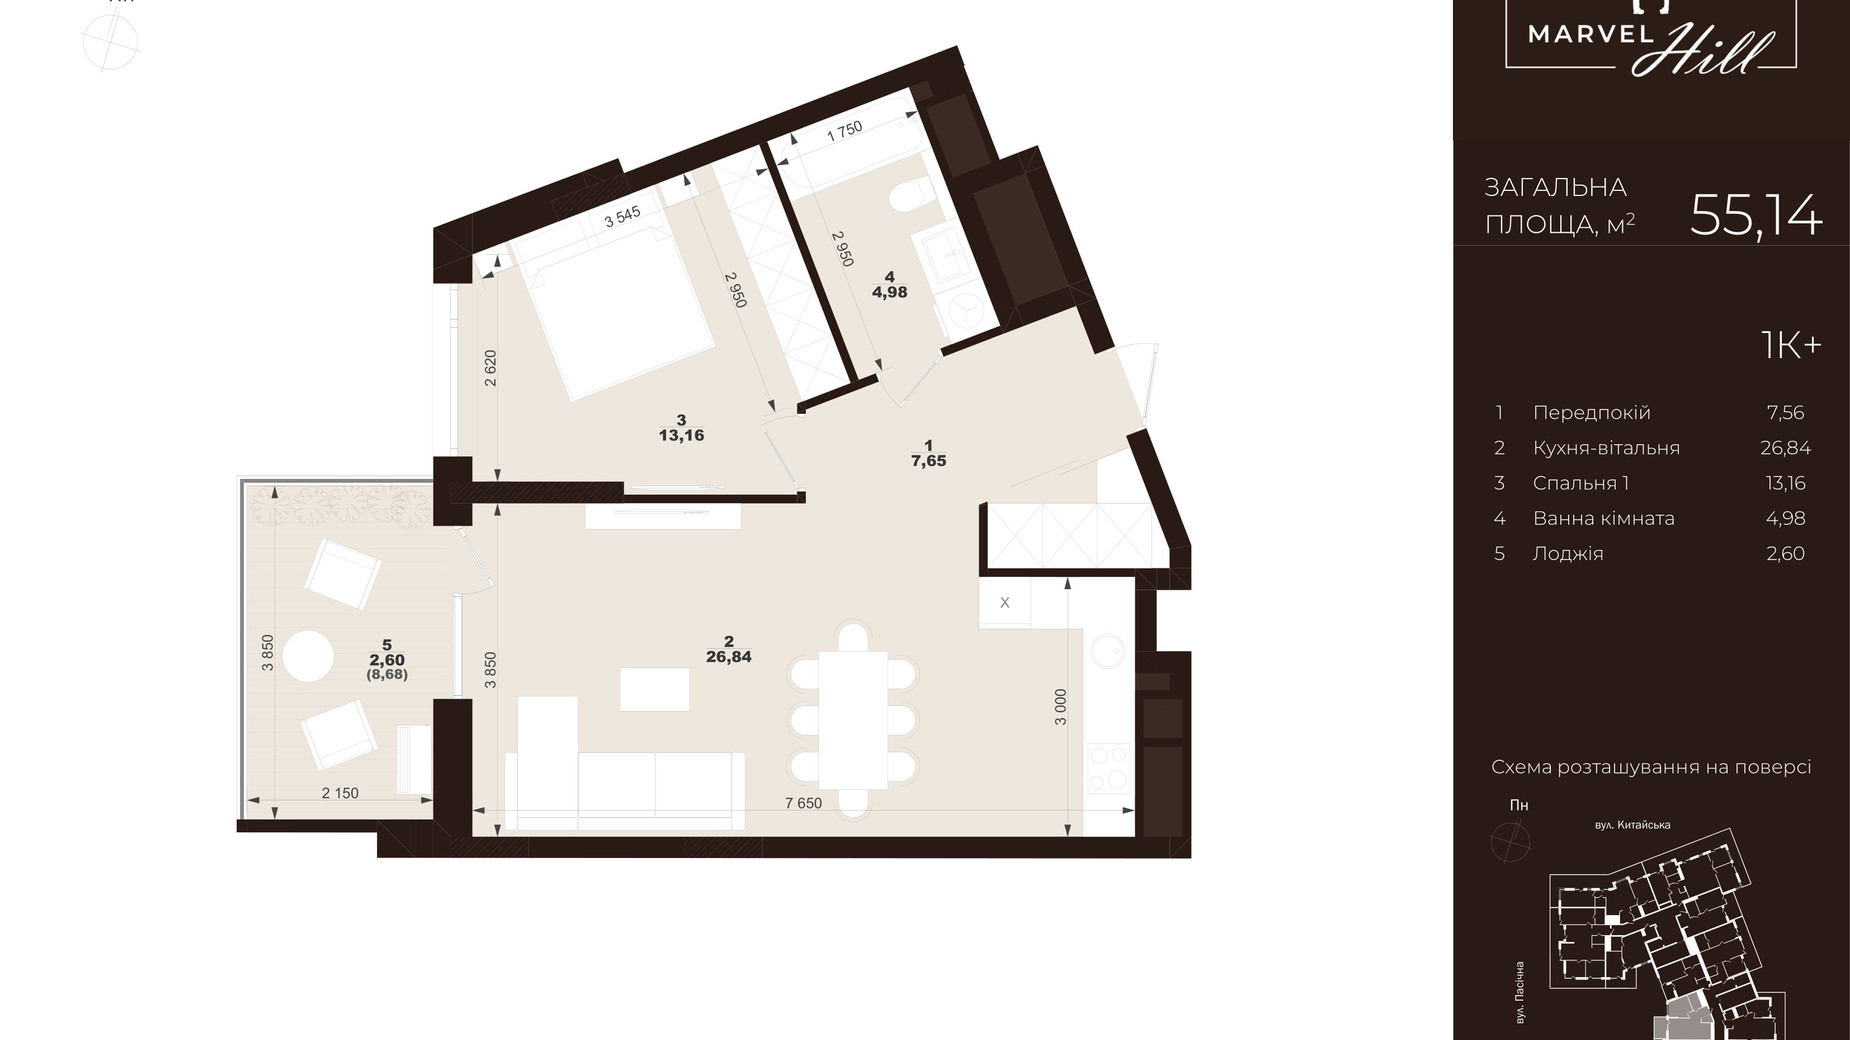 Планировка 1-комнатной квартиры в ЖК Marvel Hill 55.14 м², фото 609489